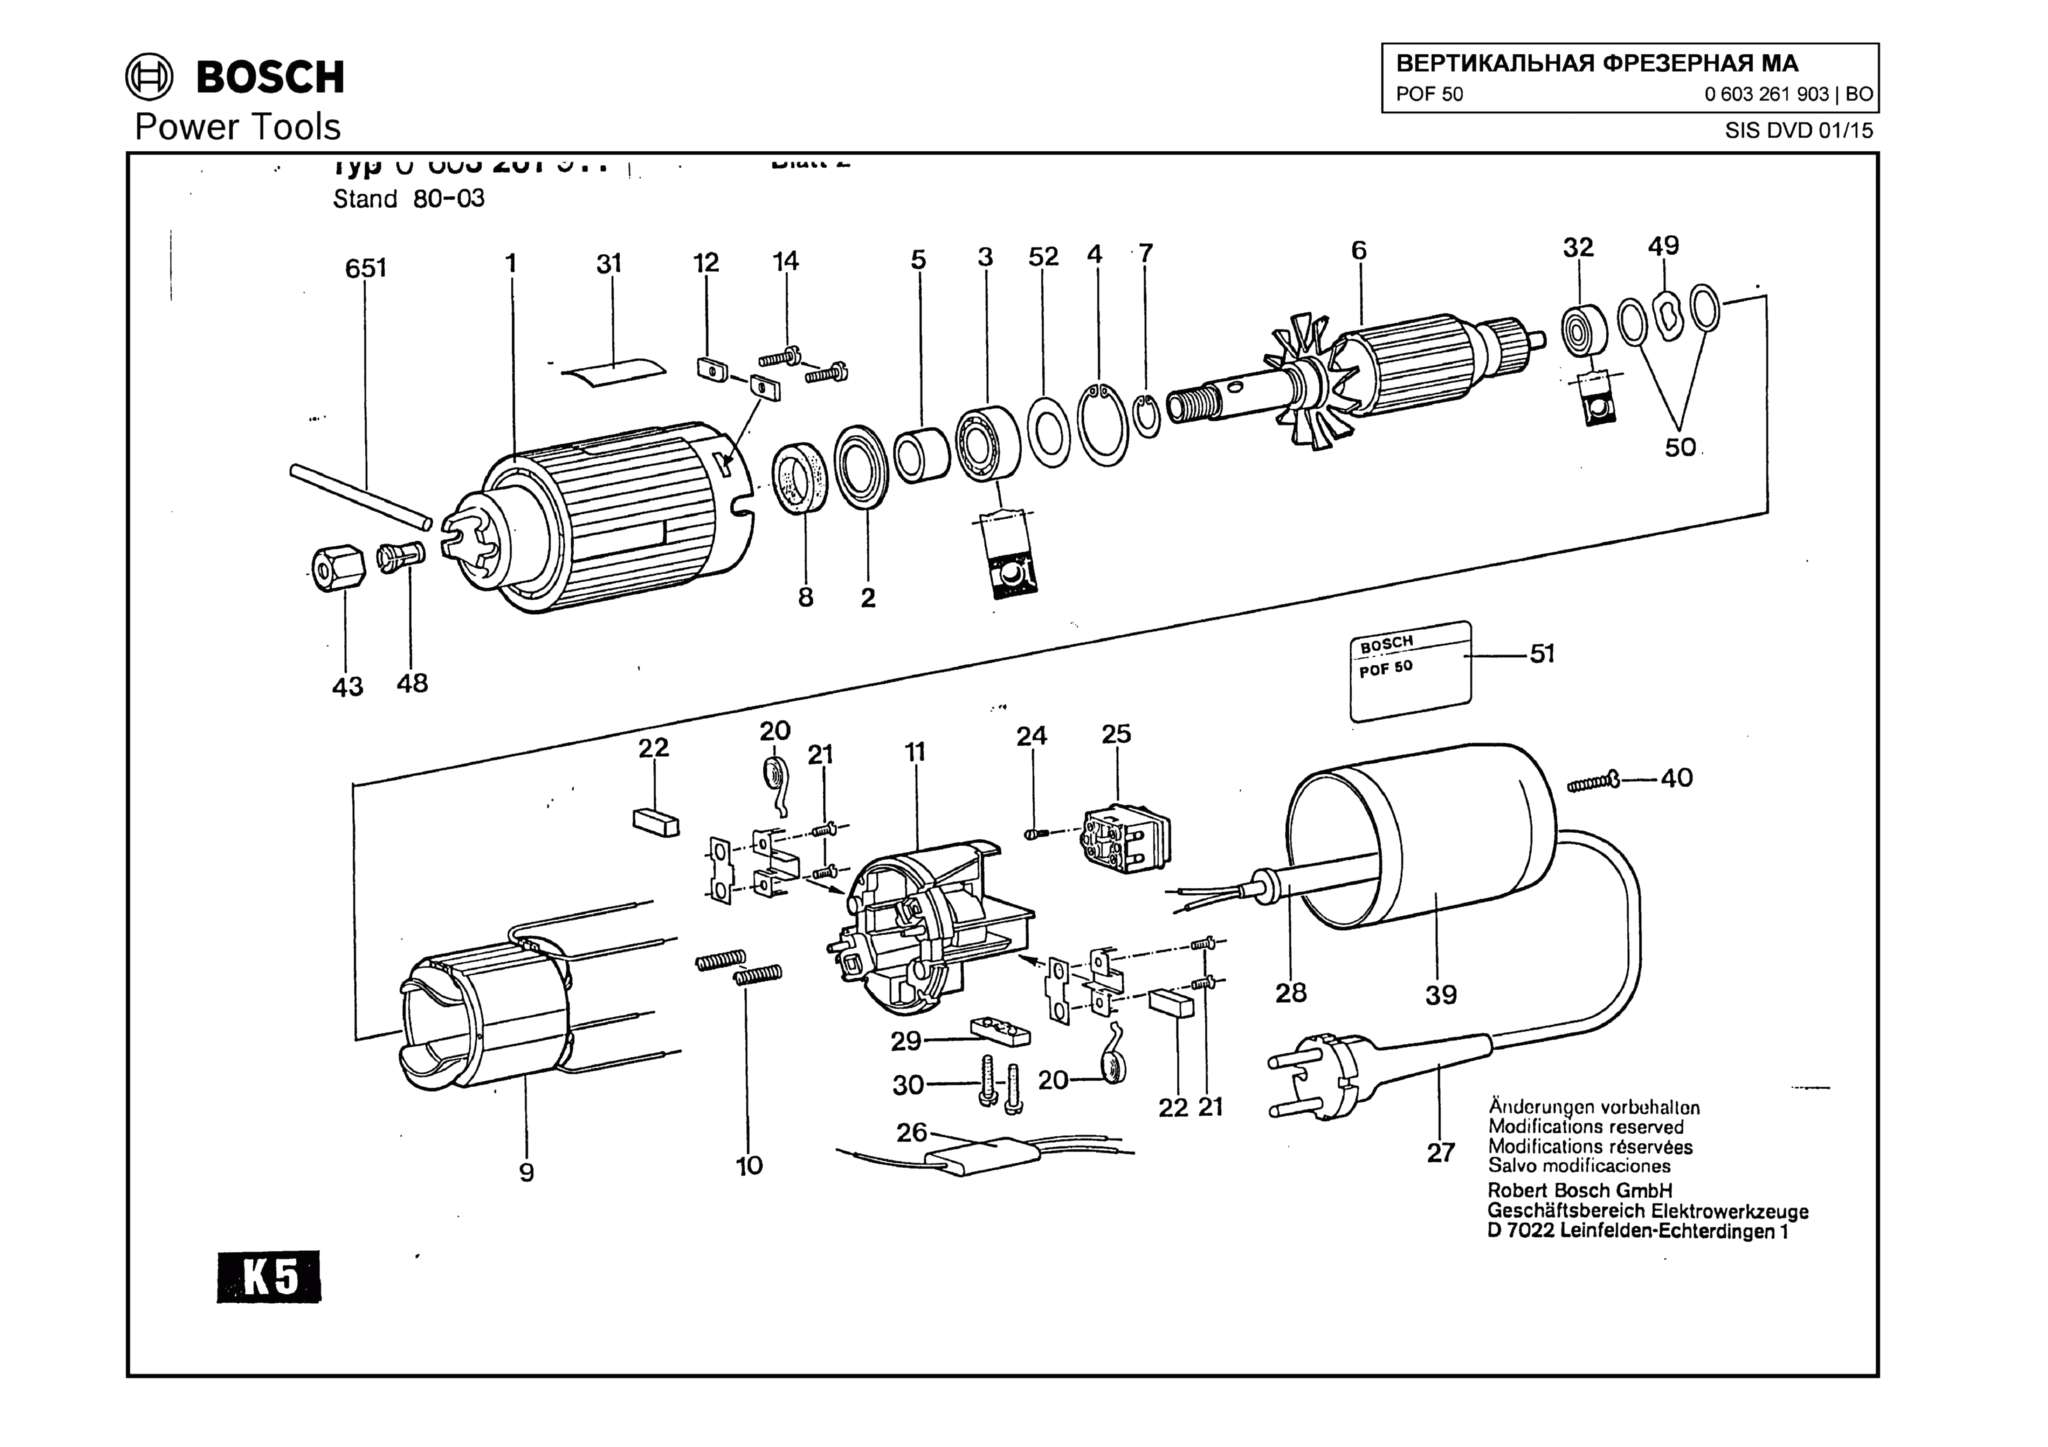 Запчасти, схема и деталировка Bosch POF 50 (ТИП 0603261903)